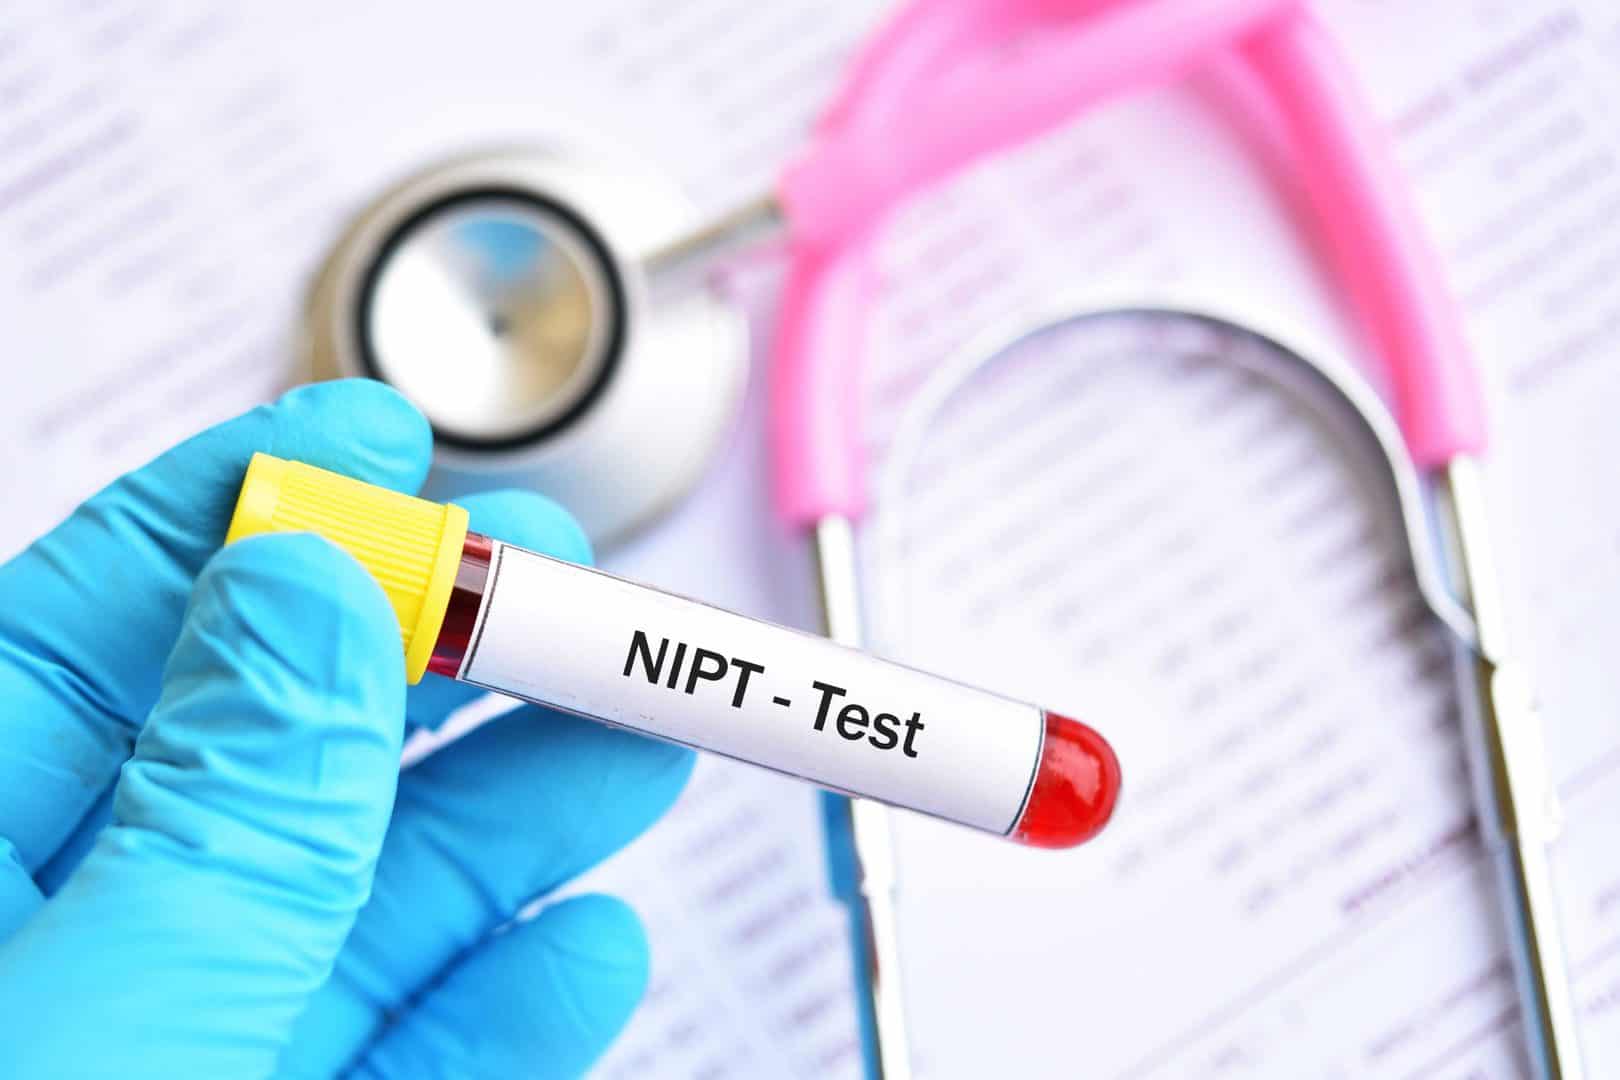 בדיקת NIPT פנורמה - אודות